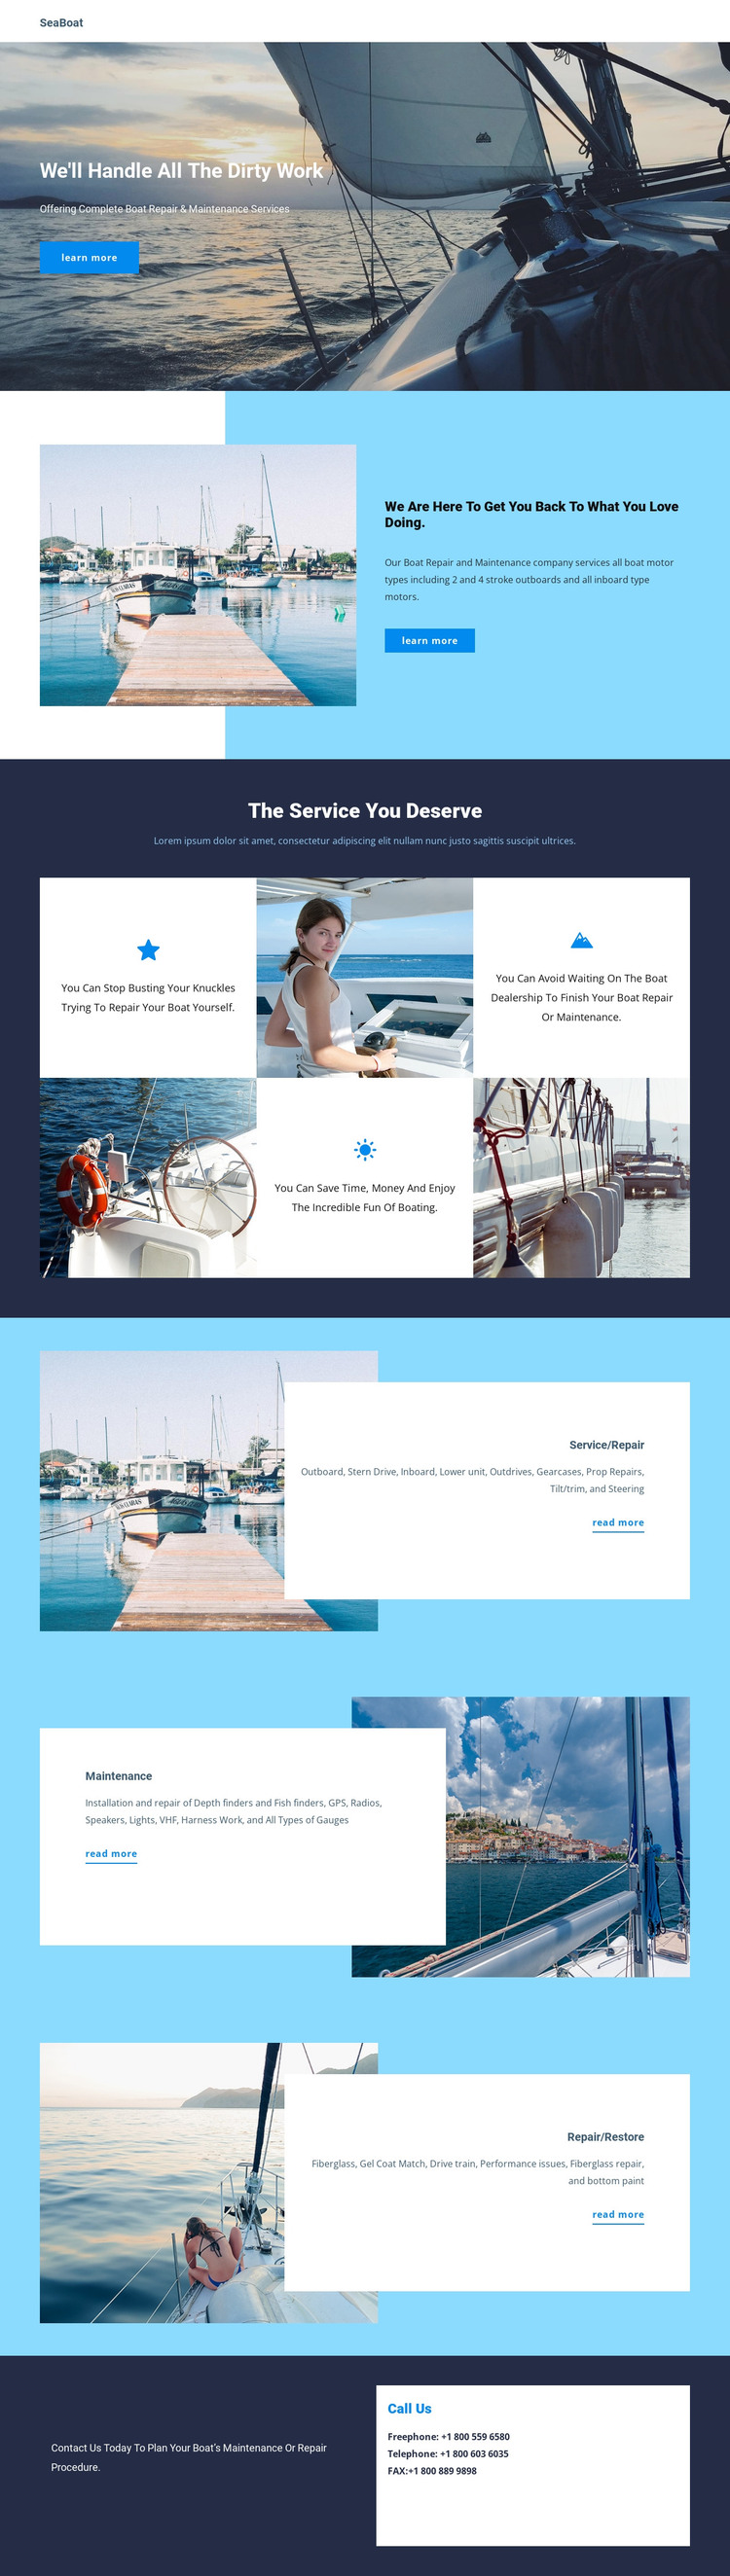 Travel on Seaboat Web Design